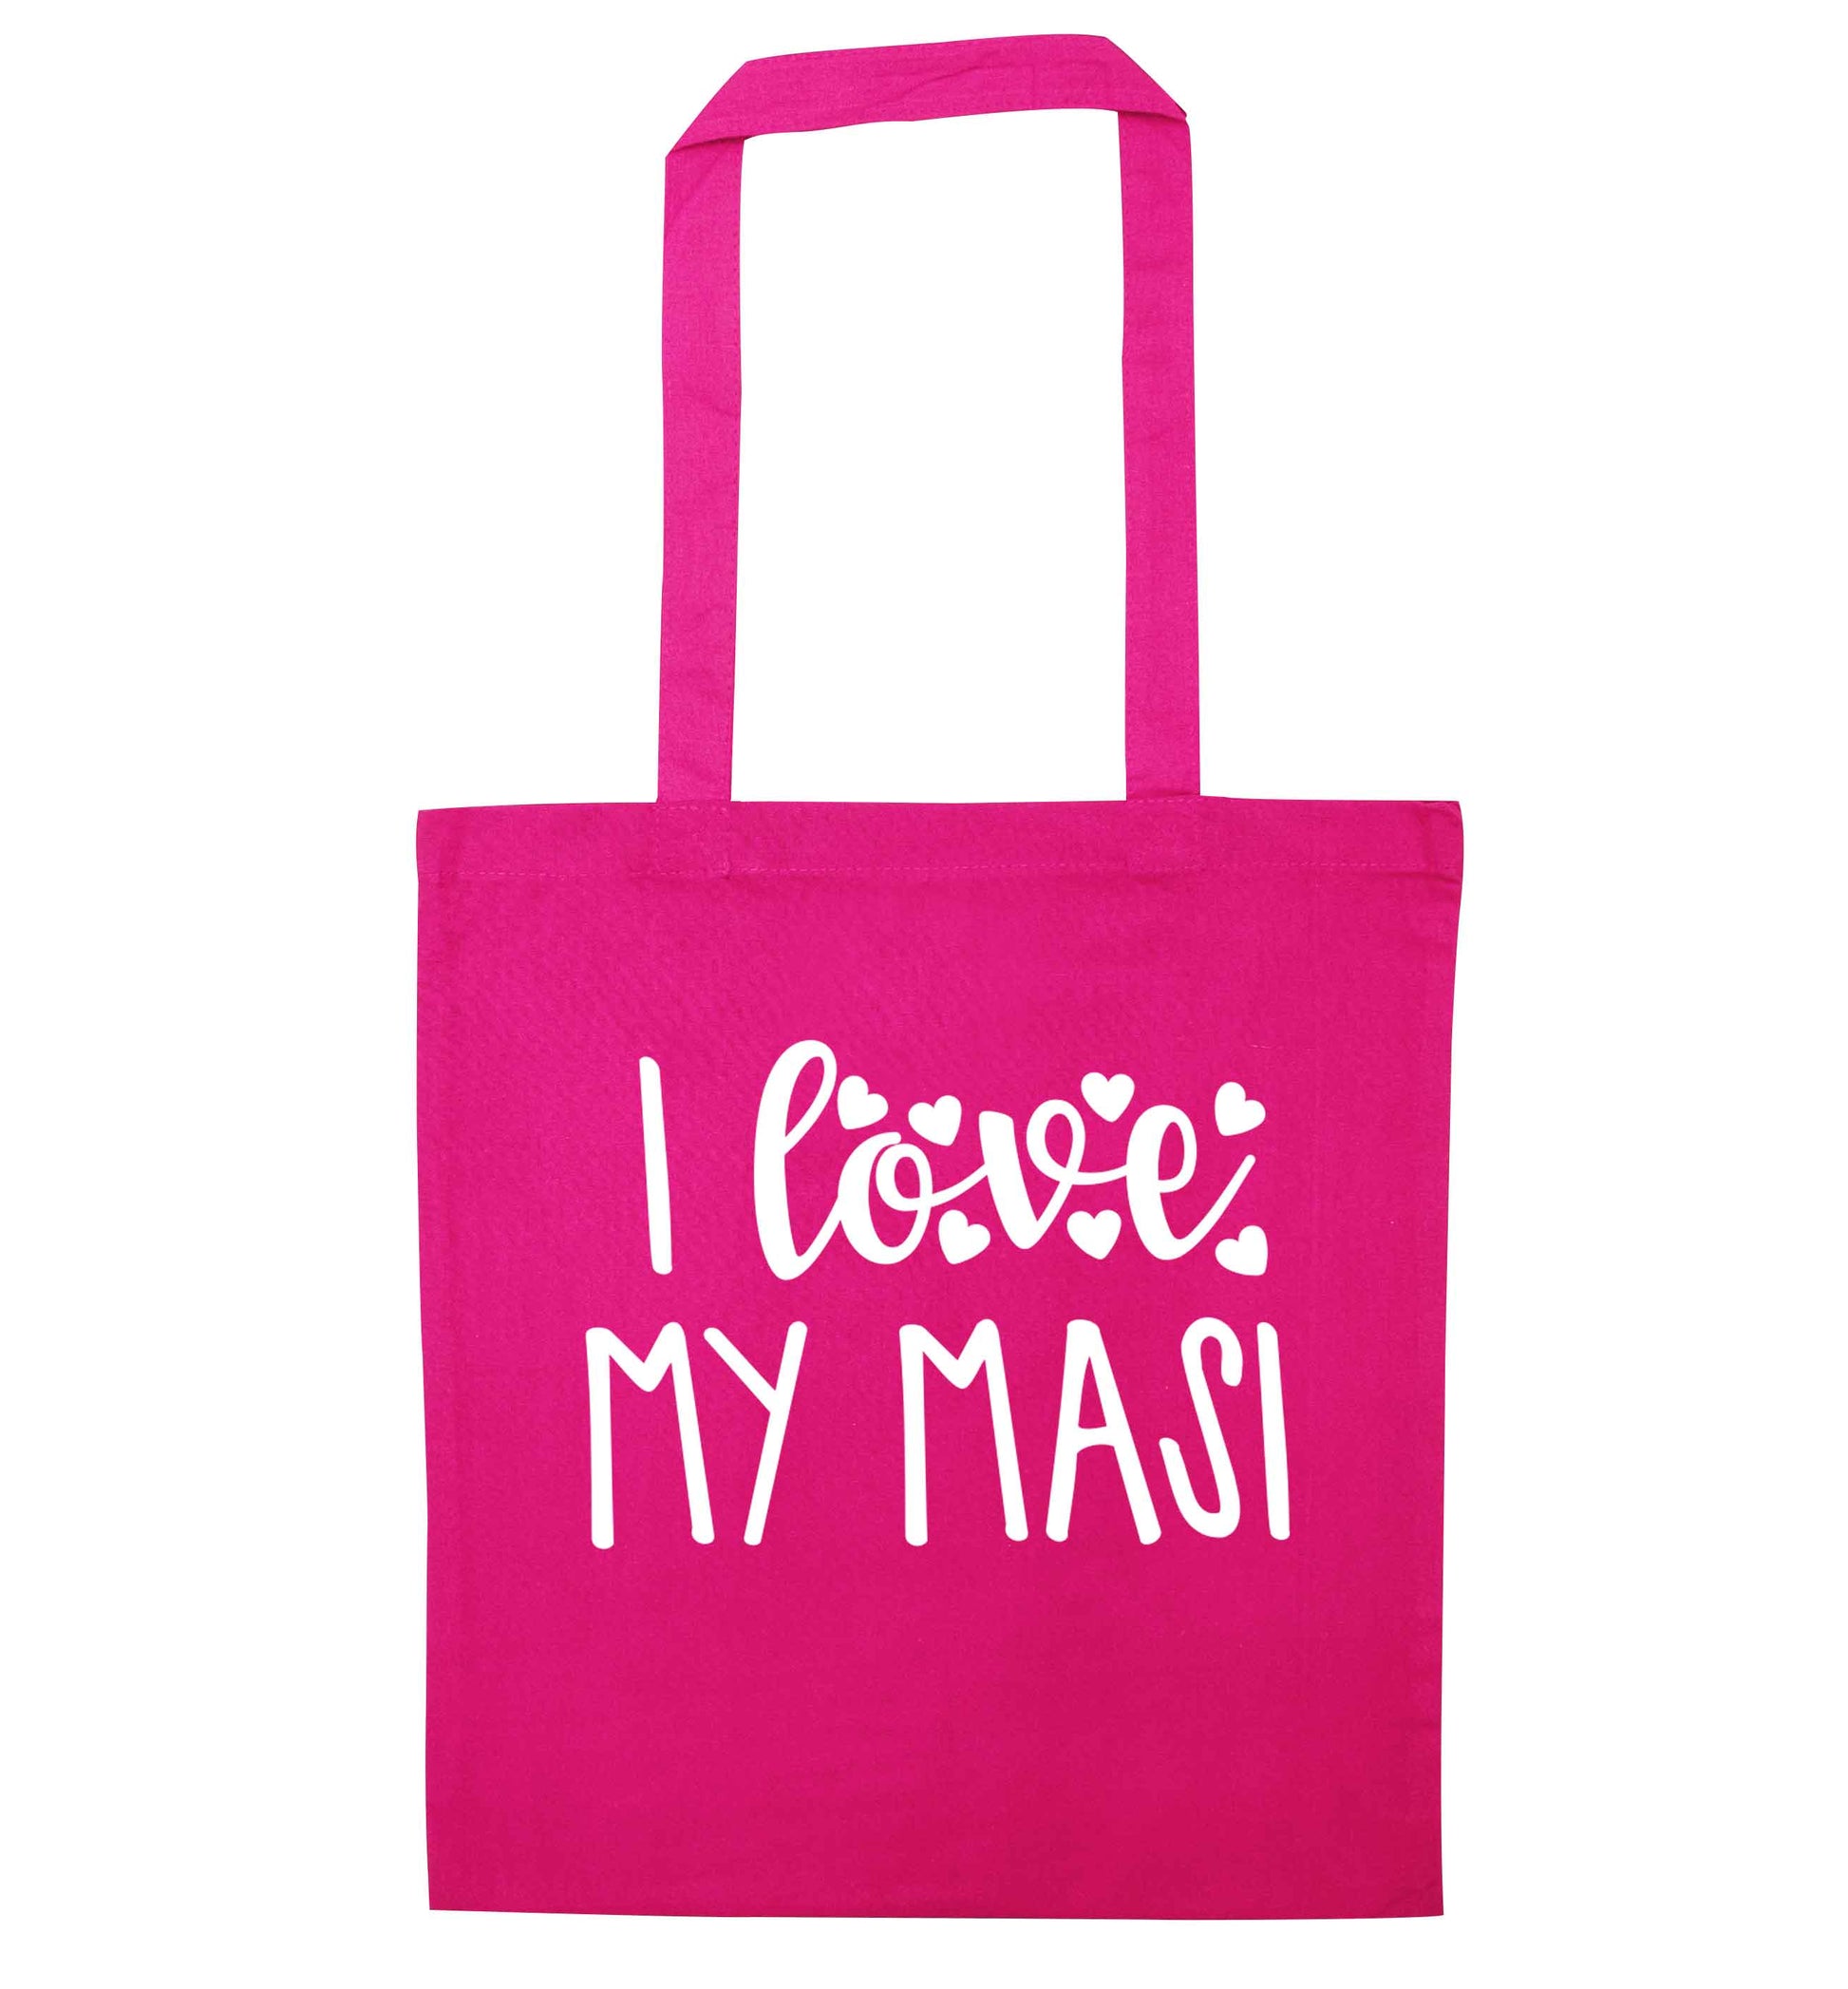 I love my masi pink tote bag